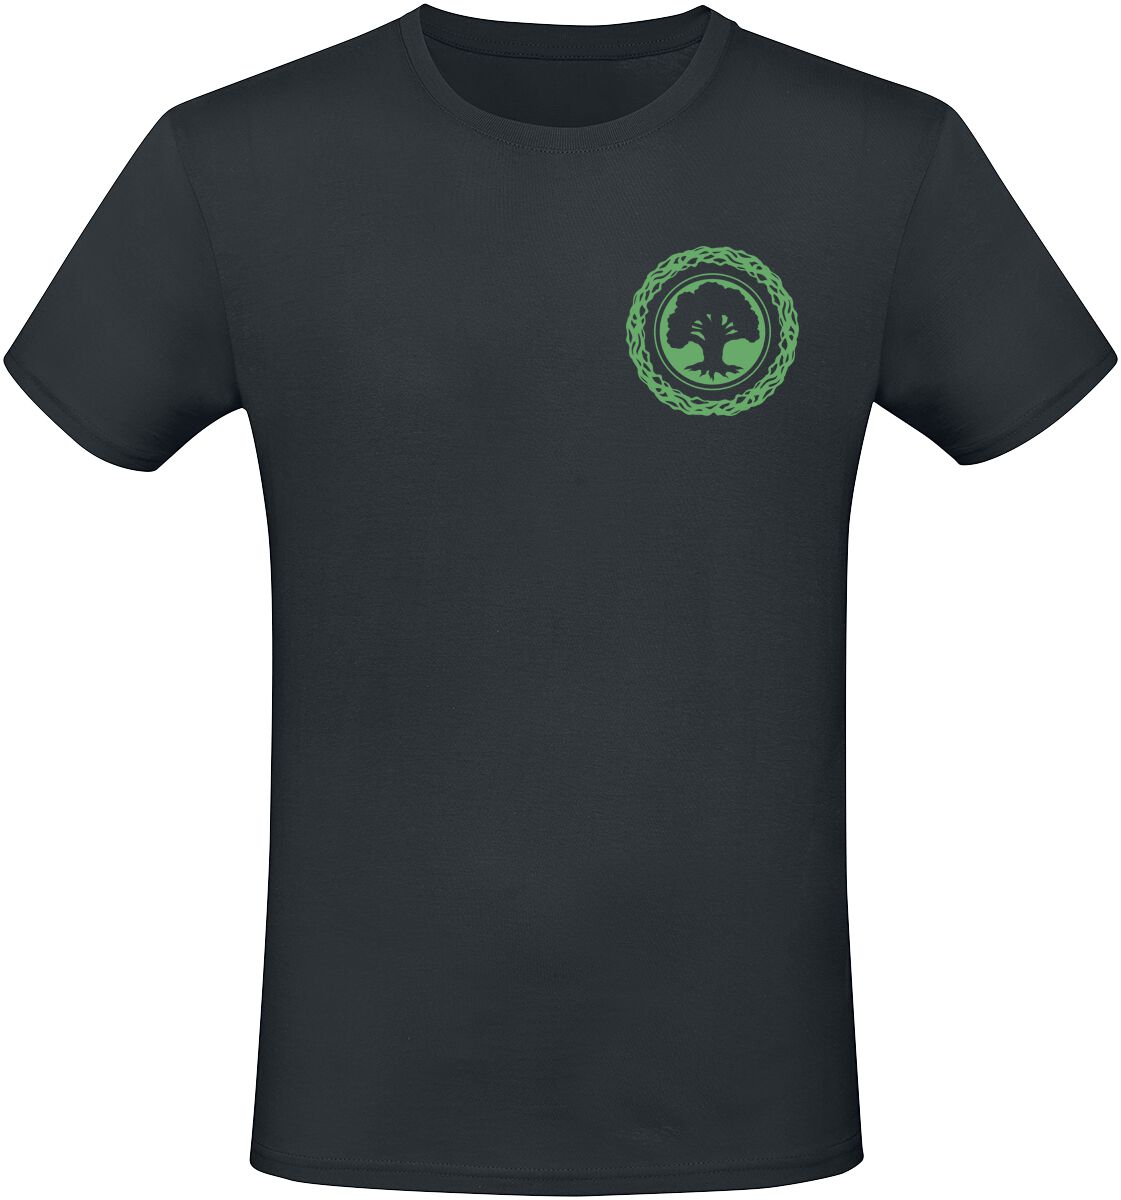 Magic: The Gathering - Gaming T-Shirt - Green Mana - S bis XXL - für Männer - Größe S - schwarz  - EMP exklusives Merchandise!